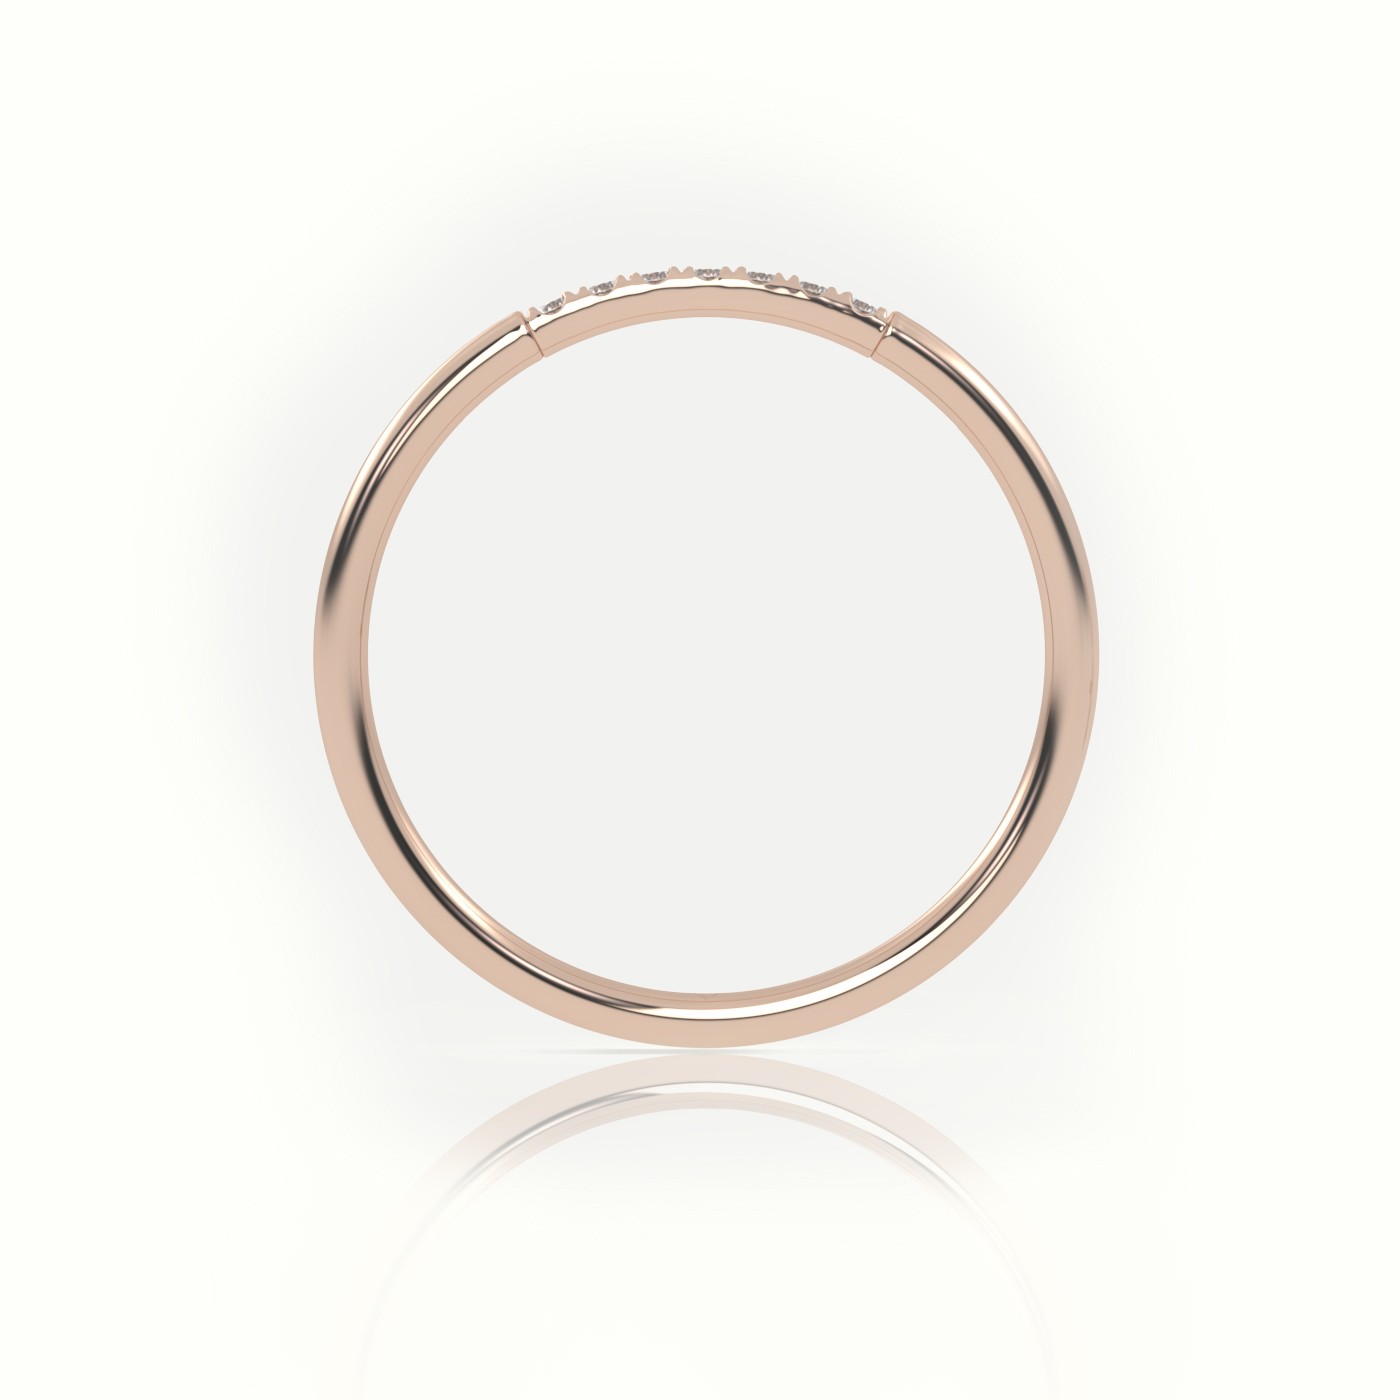 18k rose gold  round cut diamond highly polished half eternity wedding band Photos & images